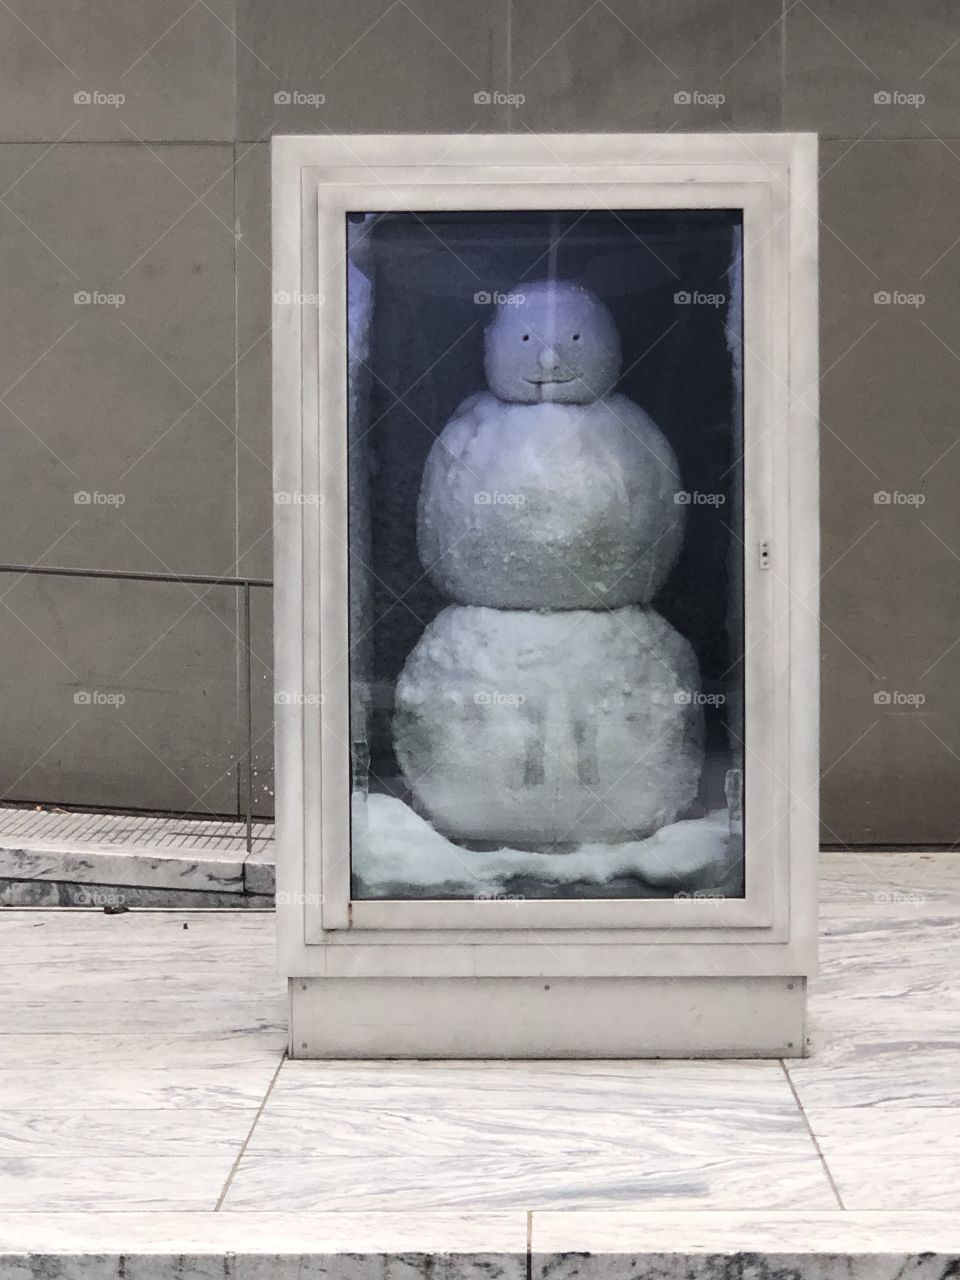 Snowman in a box